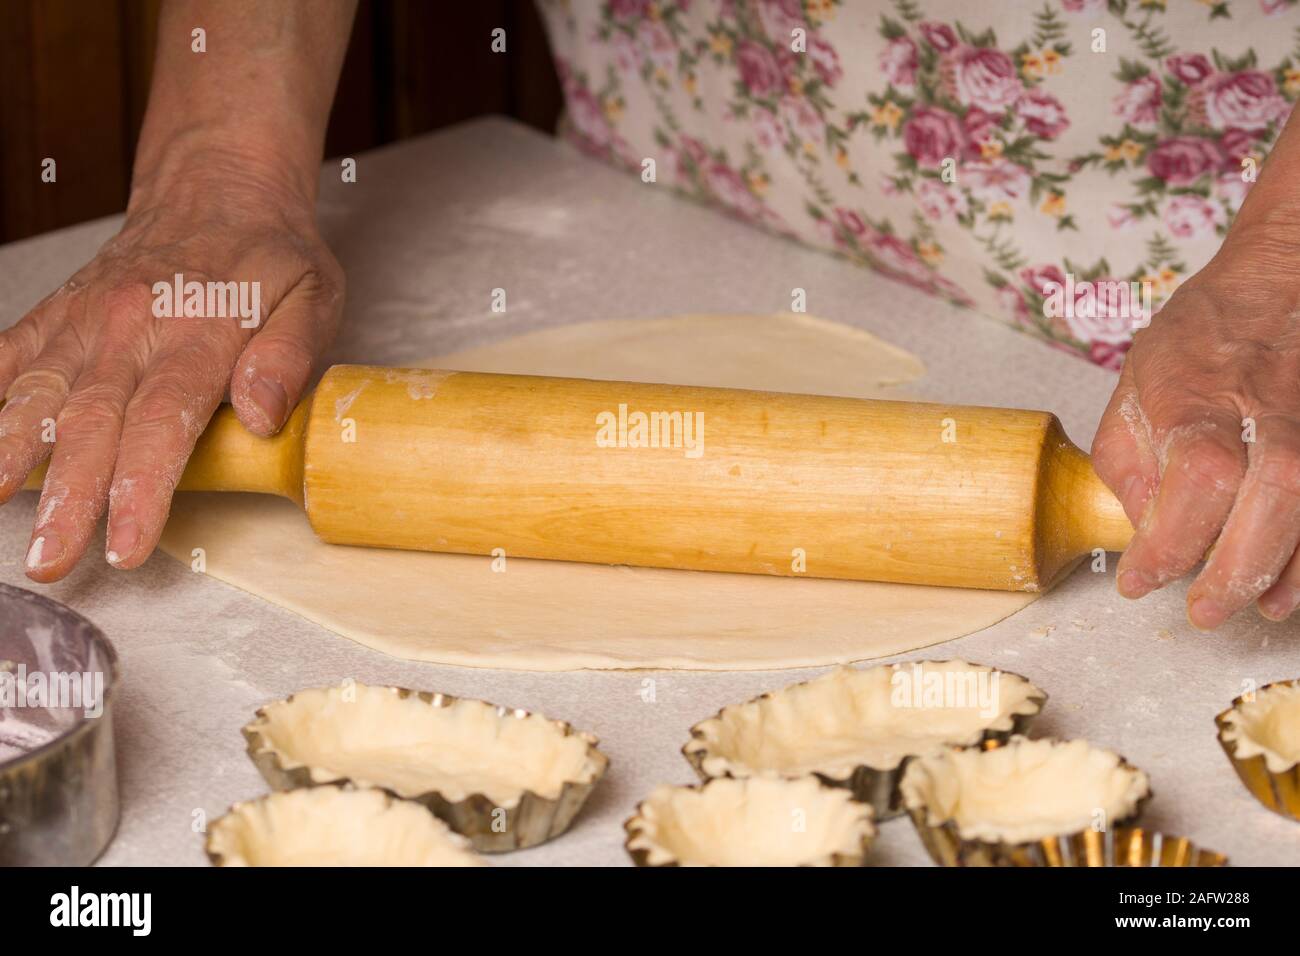 Donna preparare lâ impasto con mattarello su tavola in legno rustico Foto Stock